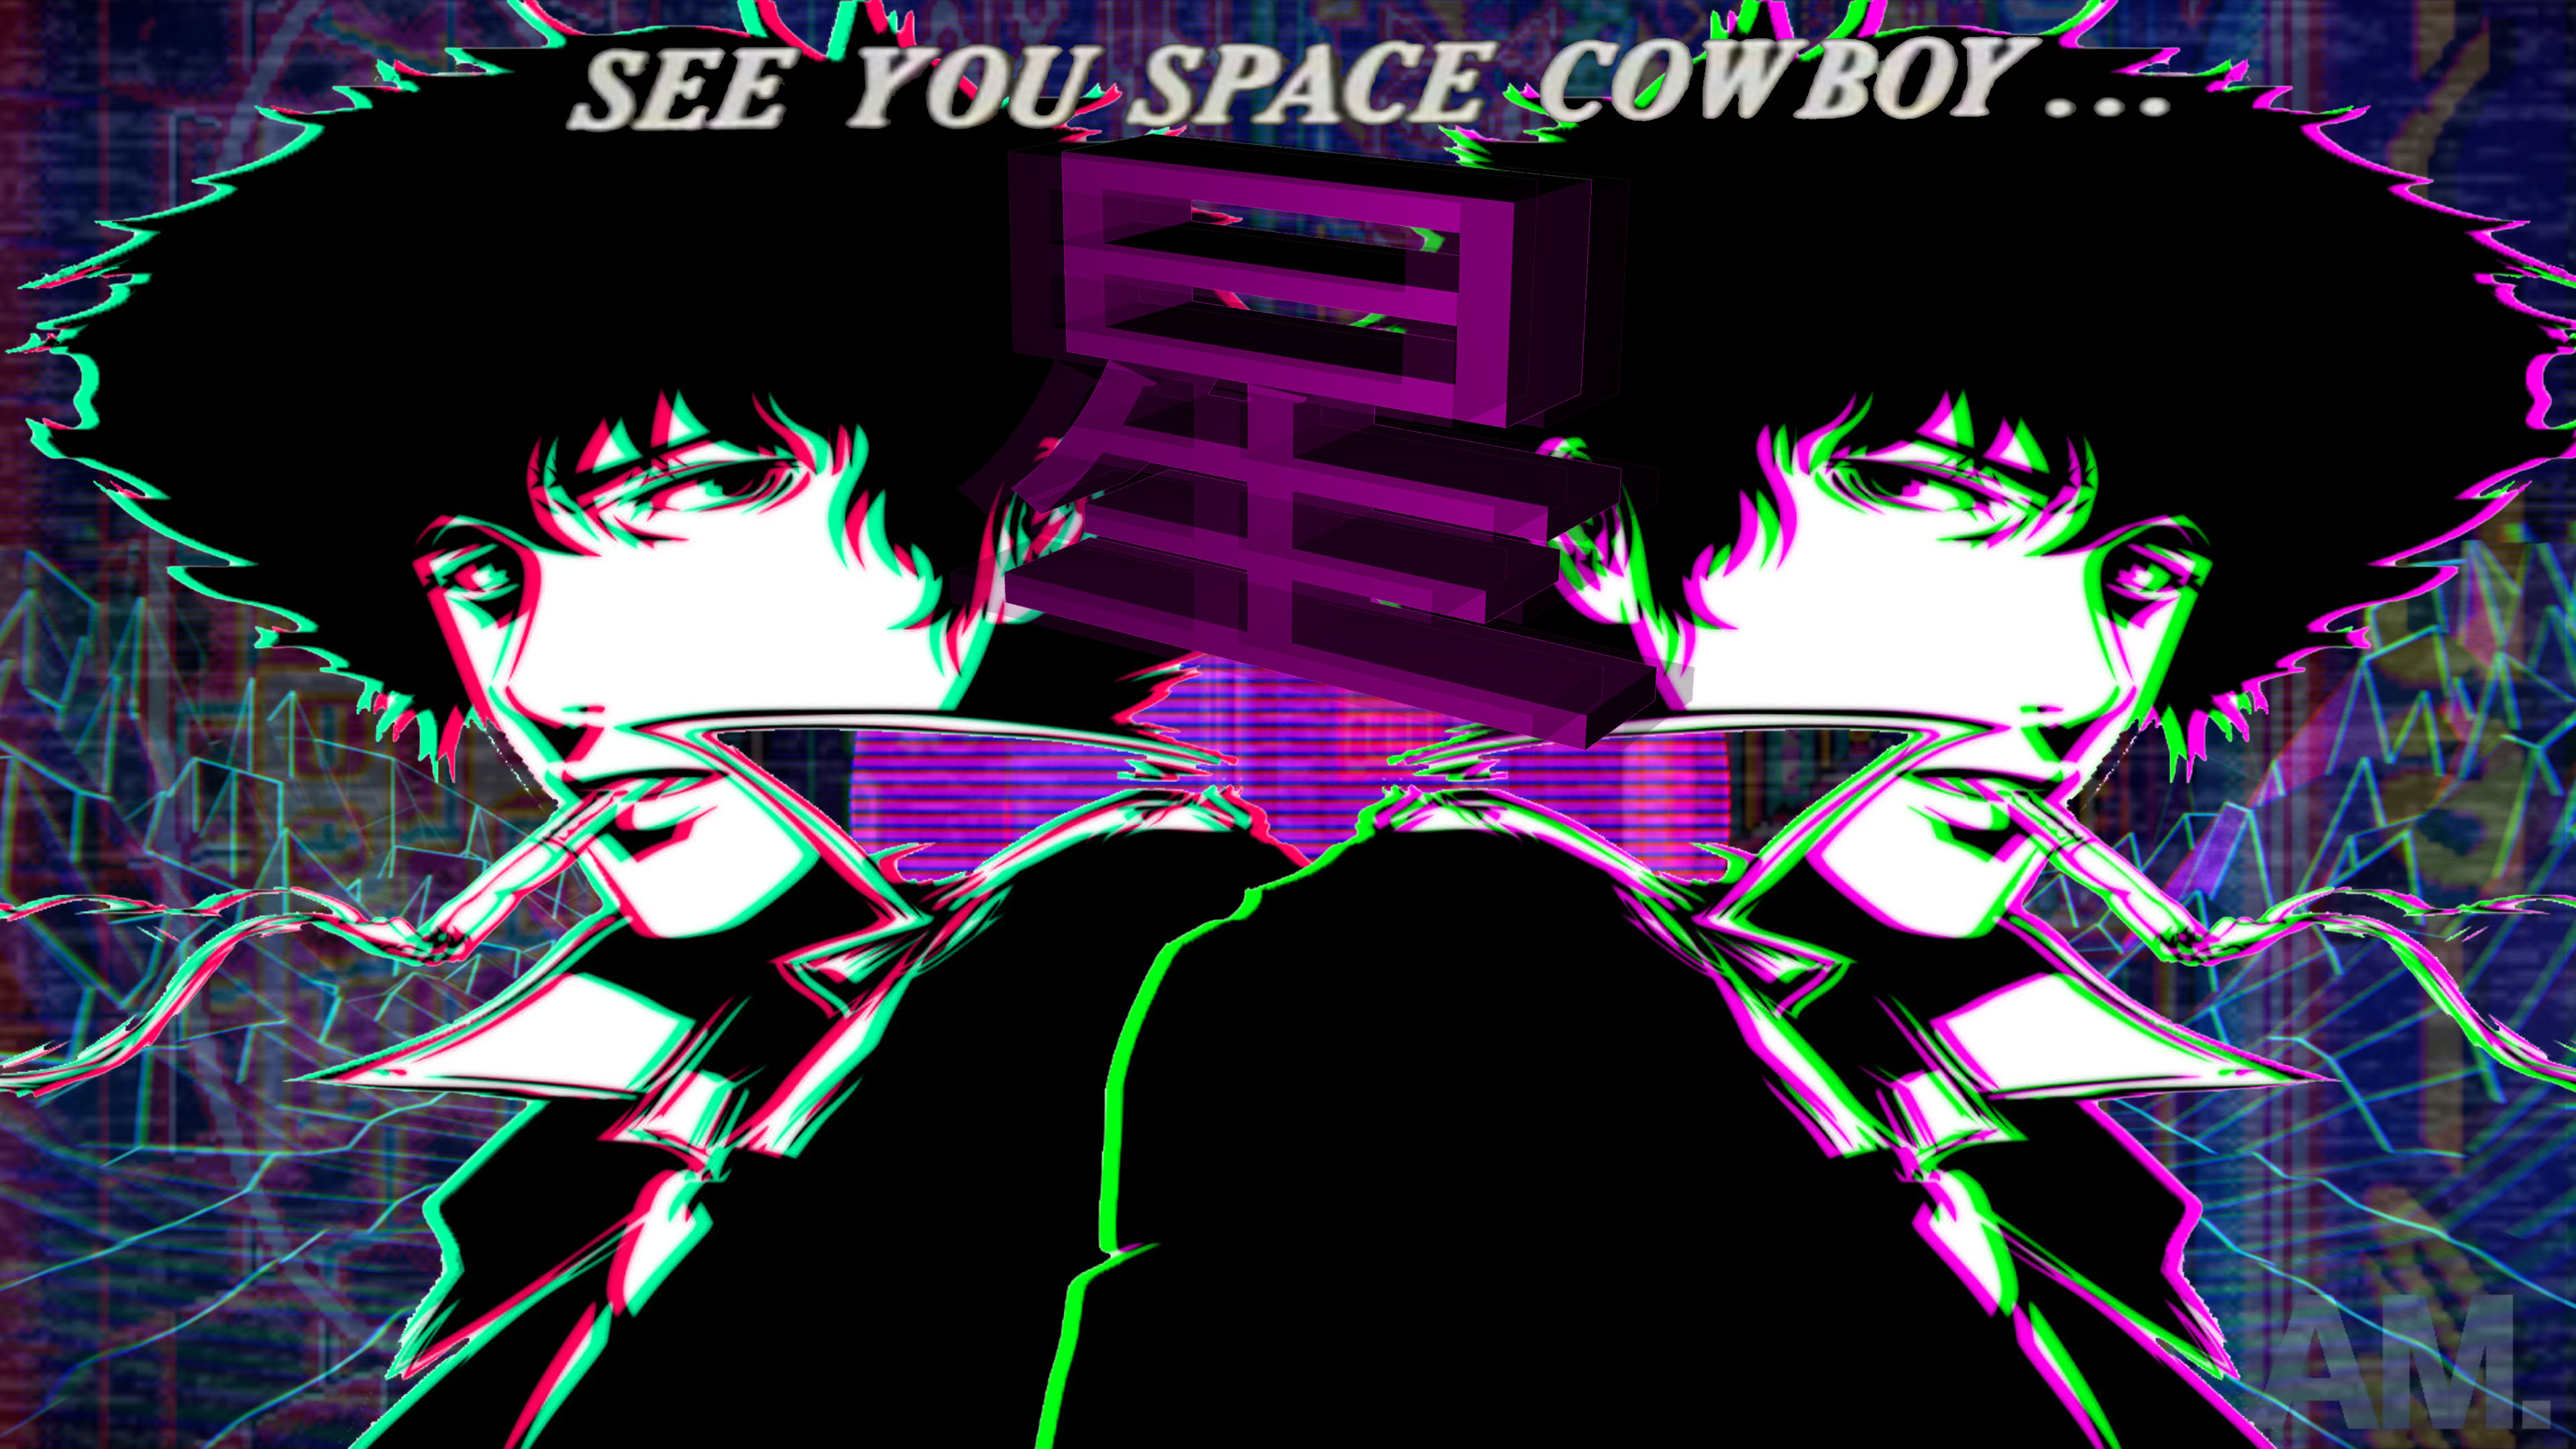 Cowboy Bebop vaporwave